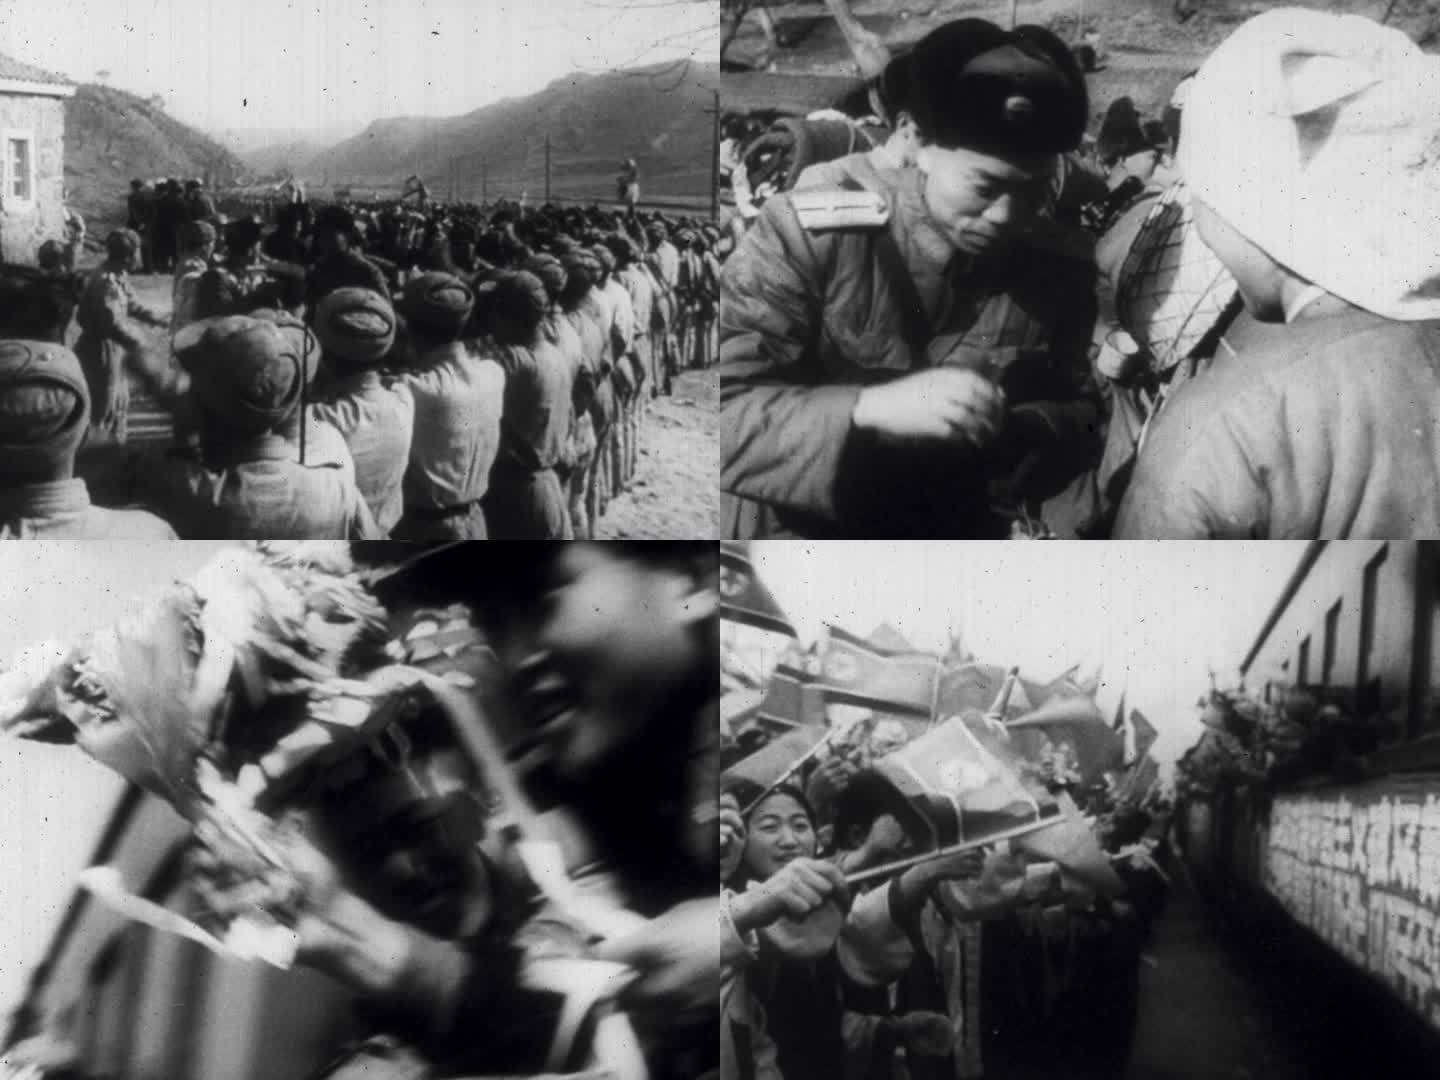 抗美援朝胜利 朝鲜人民欢送解放军